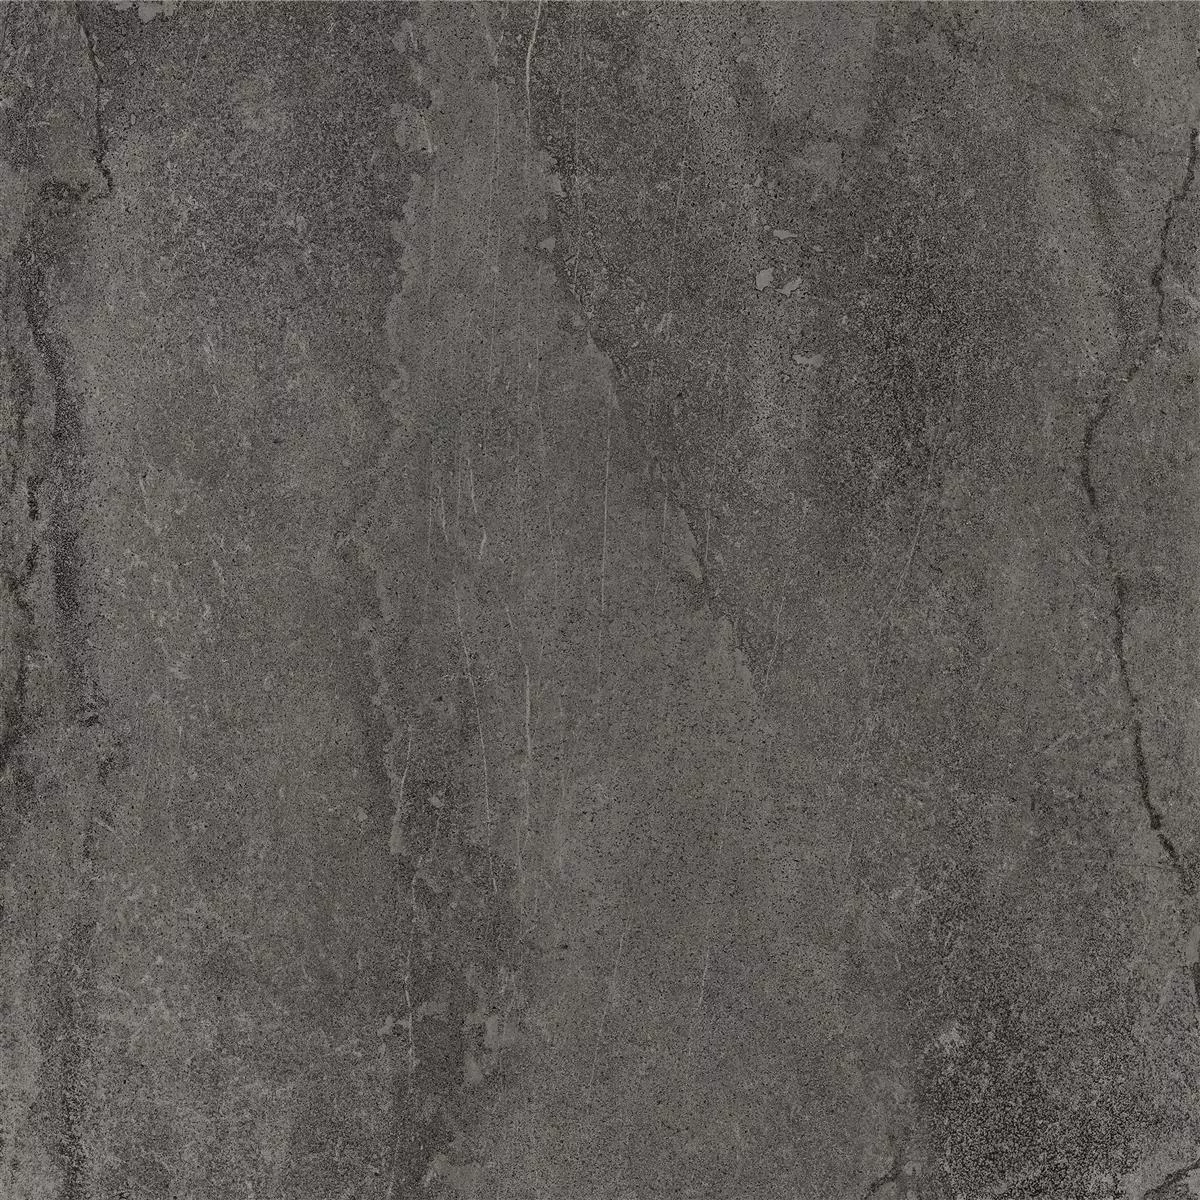 Podlahové Dlaždice Detmold Vzhled Přírodního Kamene 60x60cm Antracitová